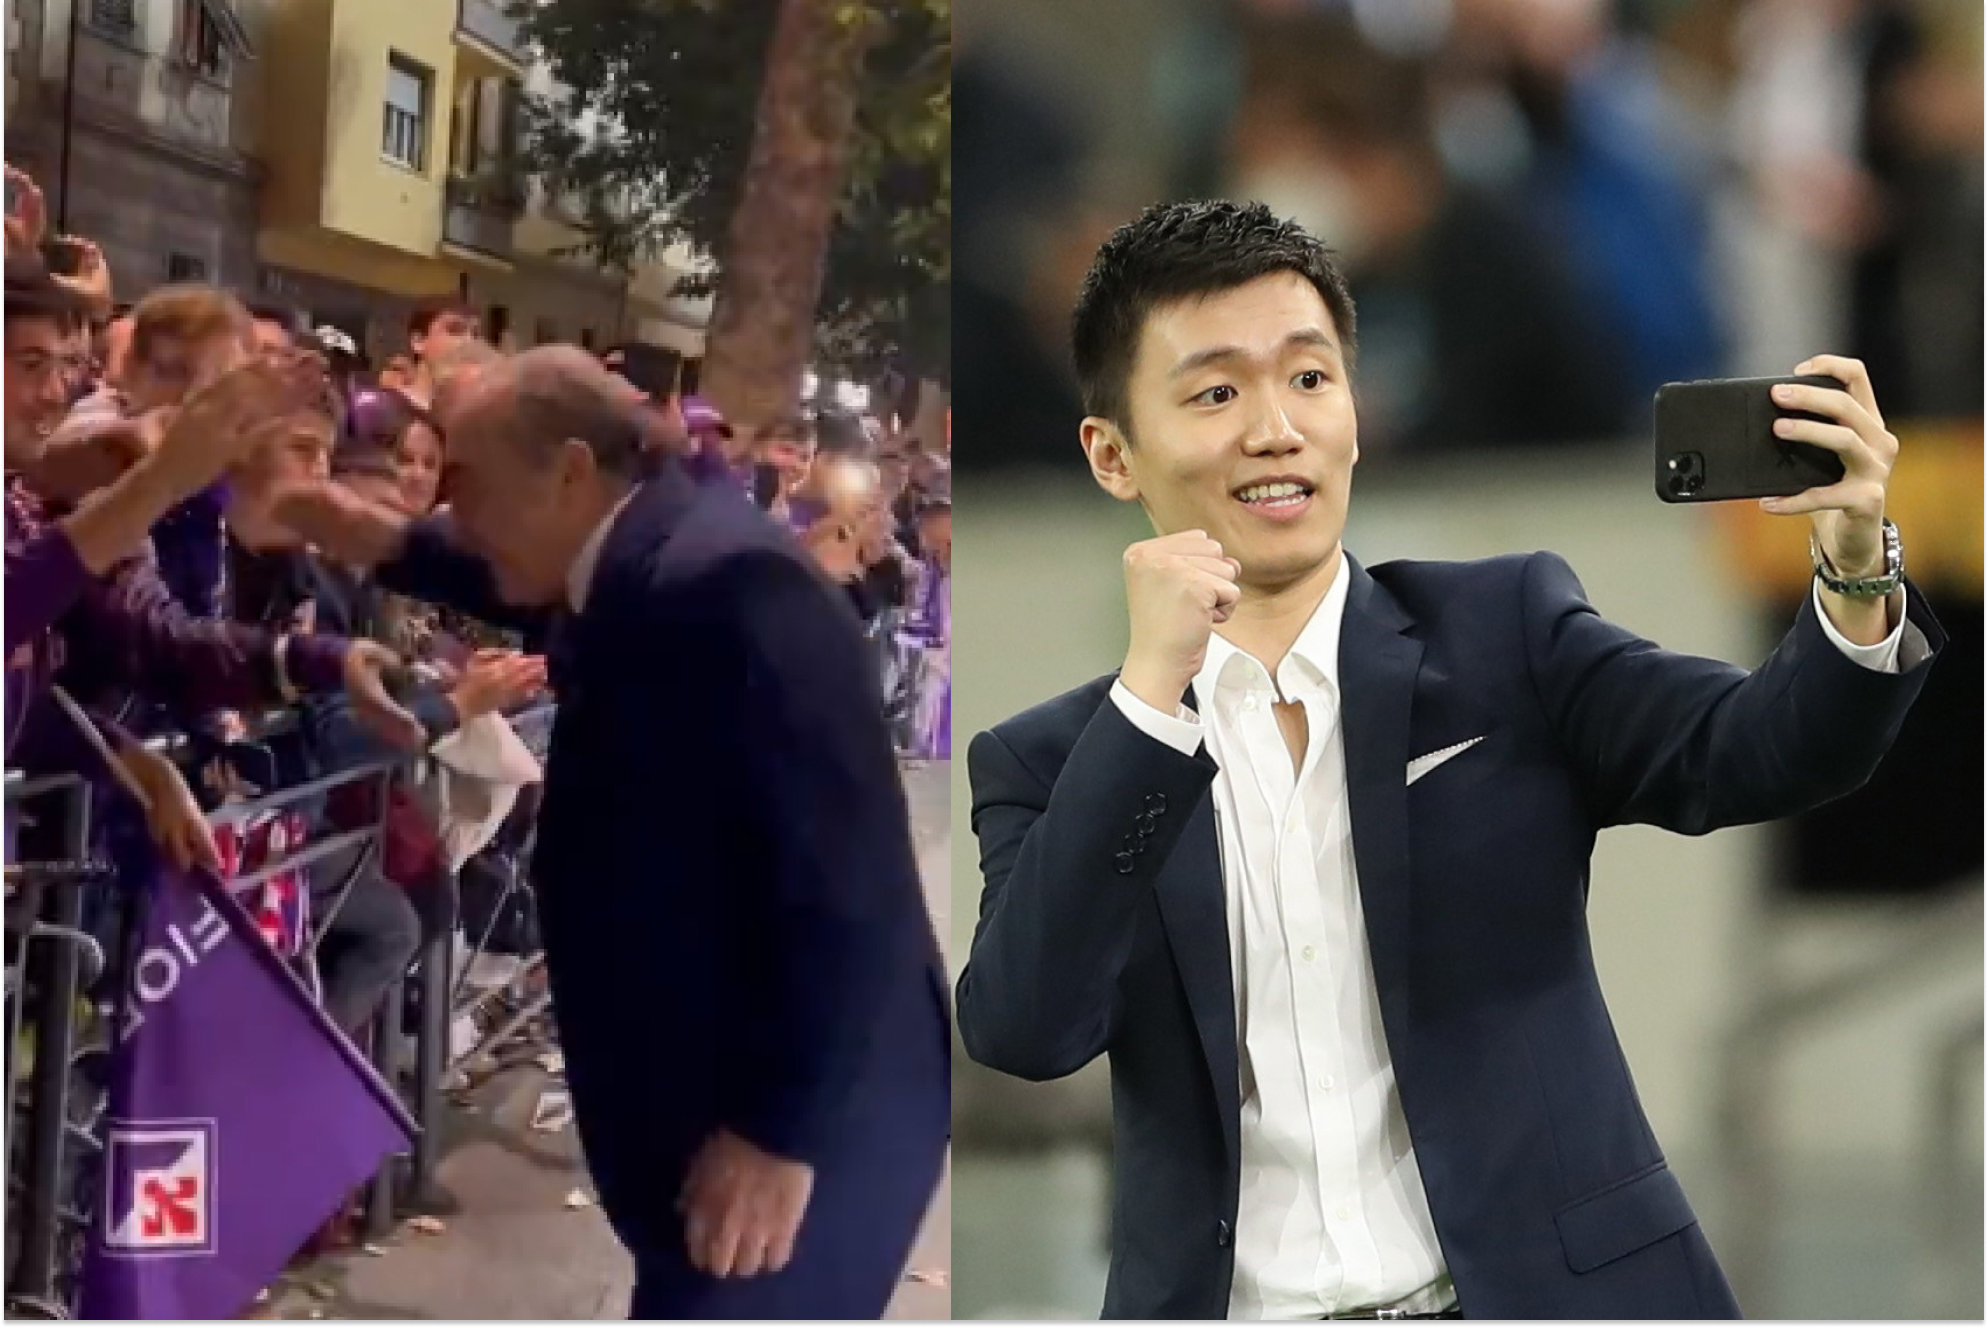 Rocco Commisso (Presidente de la Fiorentina) a la izquierda y Steven Zhang (Presidente del Inter) a la derecha